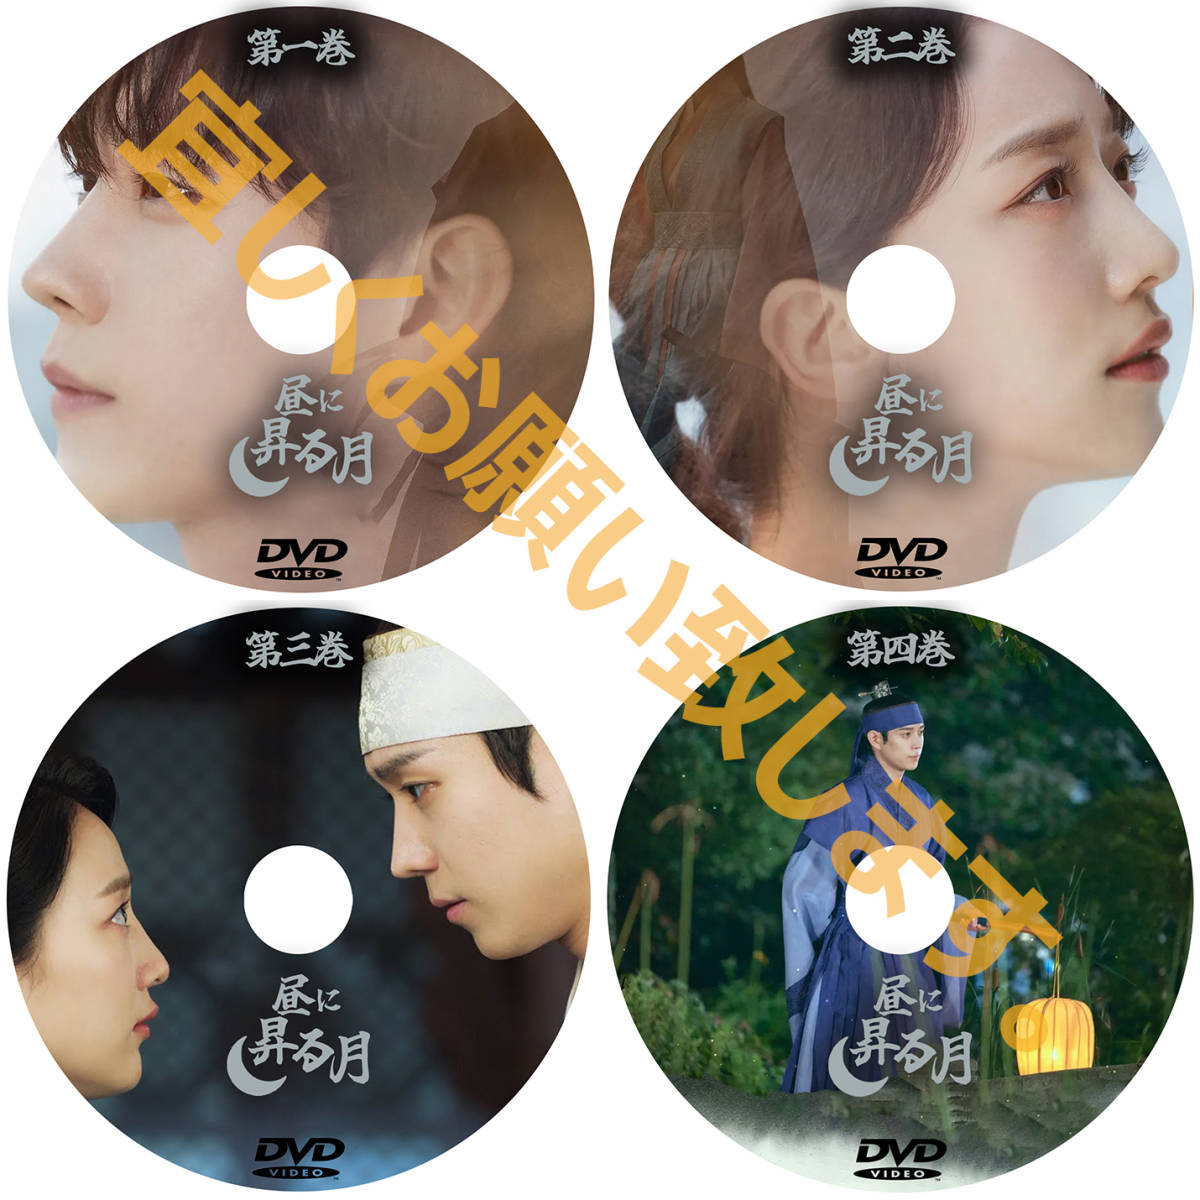 昼に昇る月D642「seven」DVD「rain」韓国ドラマ「hot」_画像2